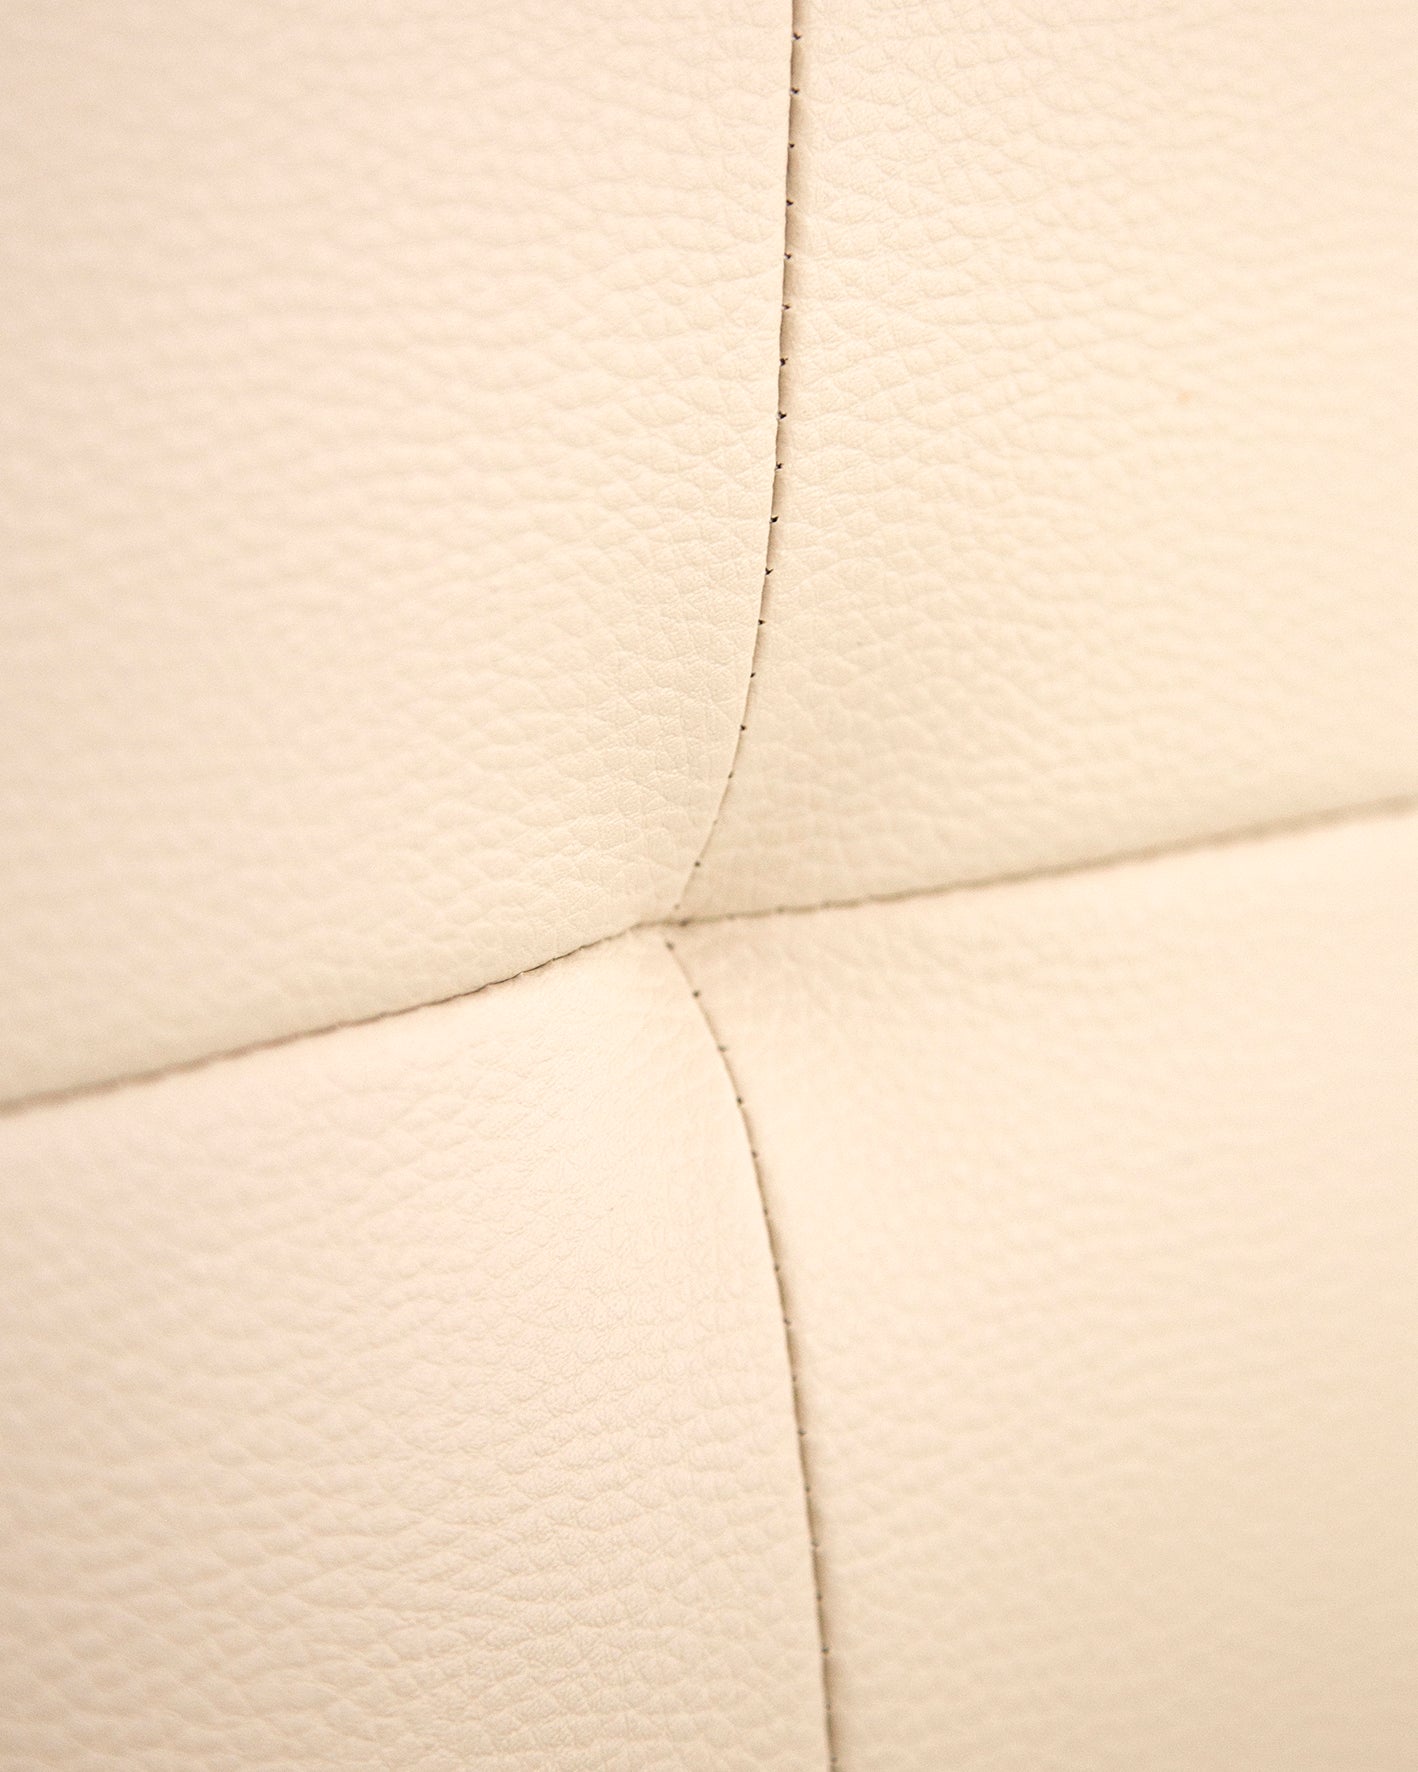 Cabecero tapizado de polipiel con pliegues en color beige de 150x80cm - DECOWOOD